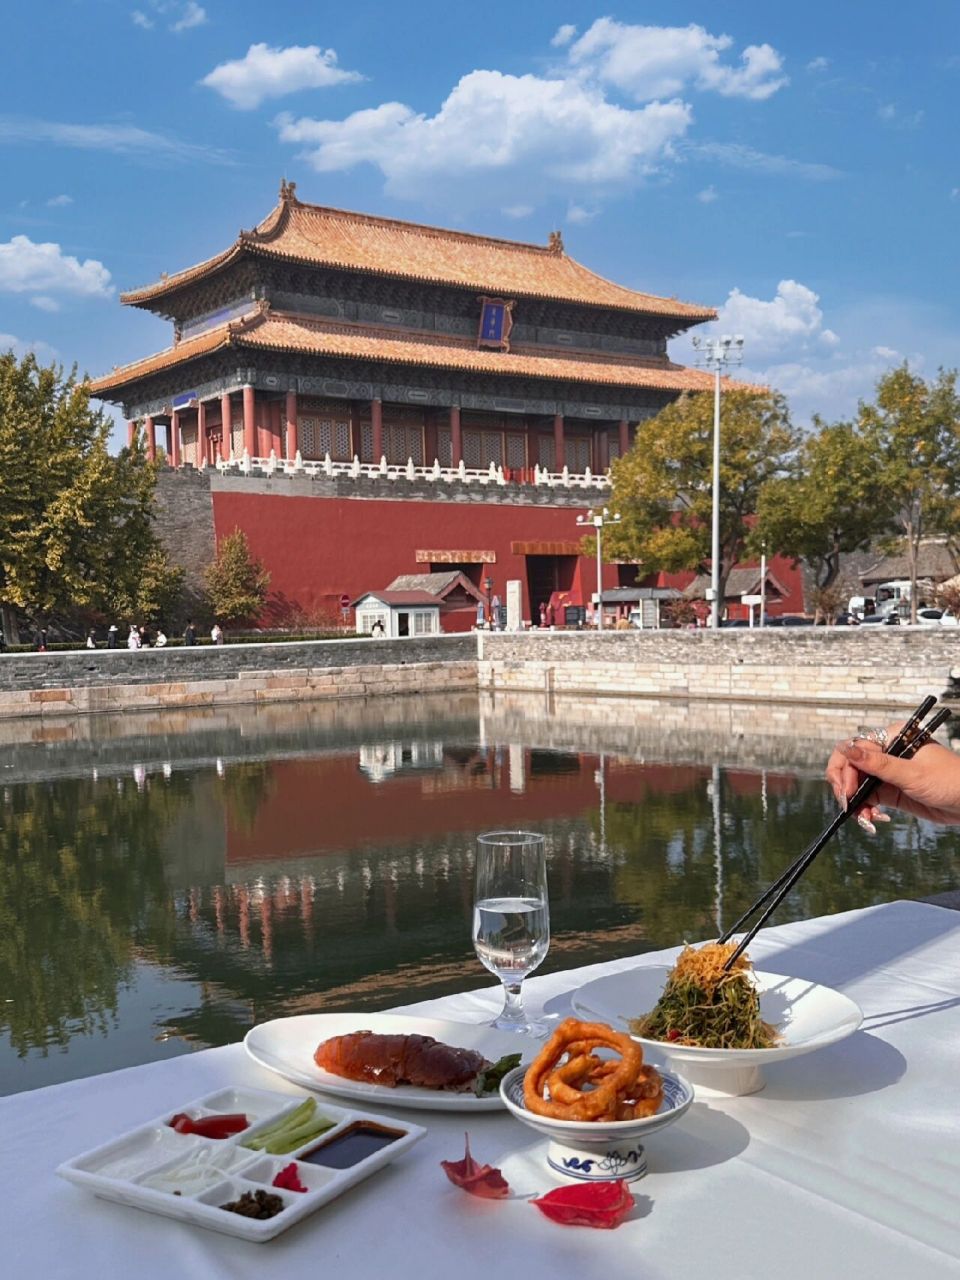 总要来北京故宫旁吃一次烤鸭吧! 四季民福景观位蛮美的!